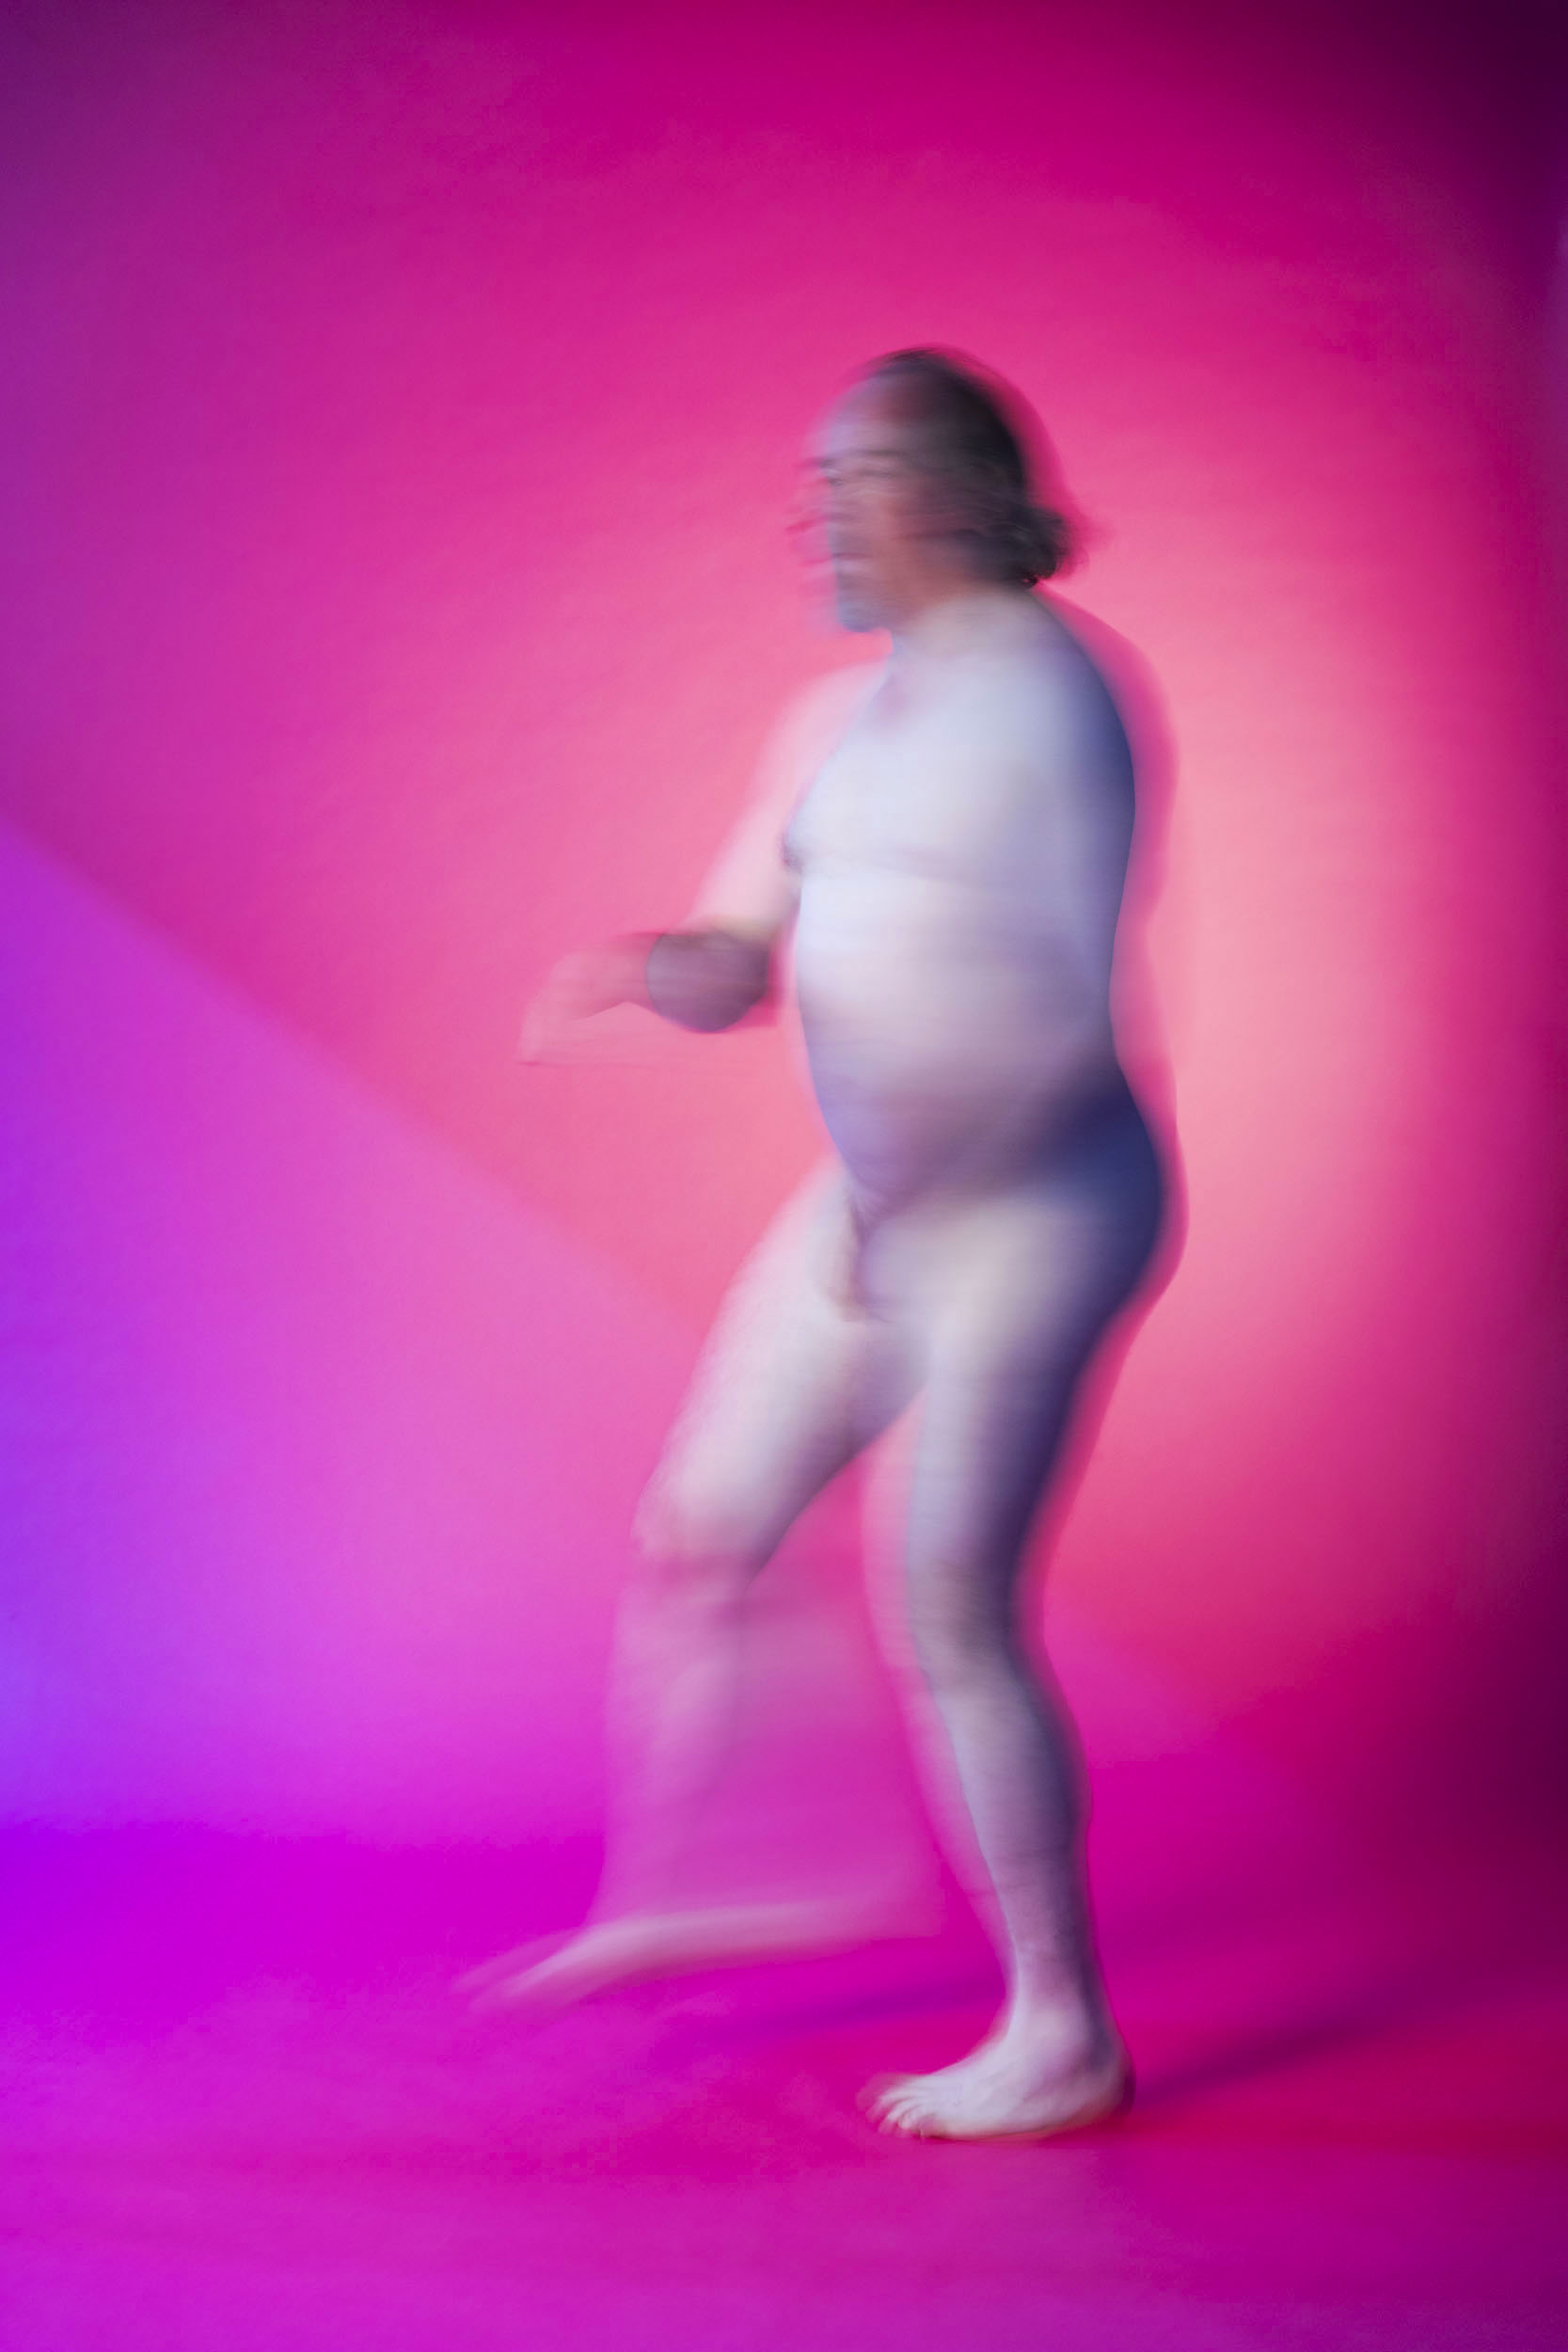 Portrait artistique d'un homme nu en mouvement sur fond rose. Photo de portrait de plain-pied réalisée en studio pour la banque d'images  Plainpicture.